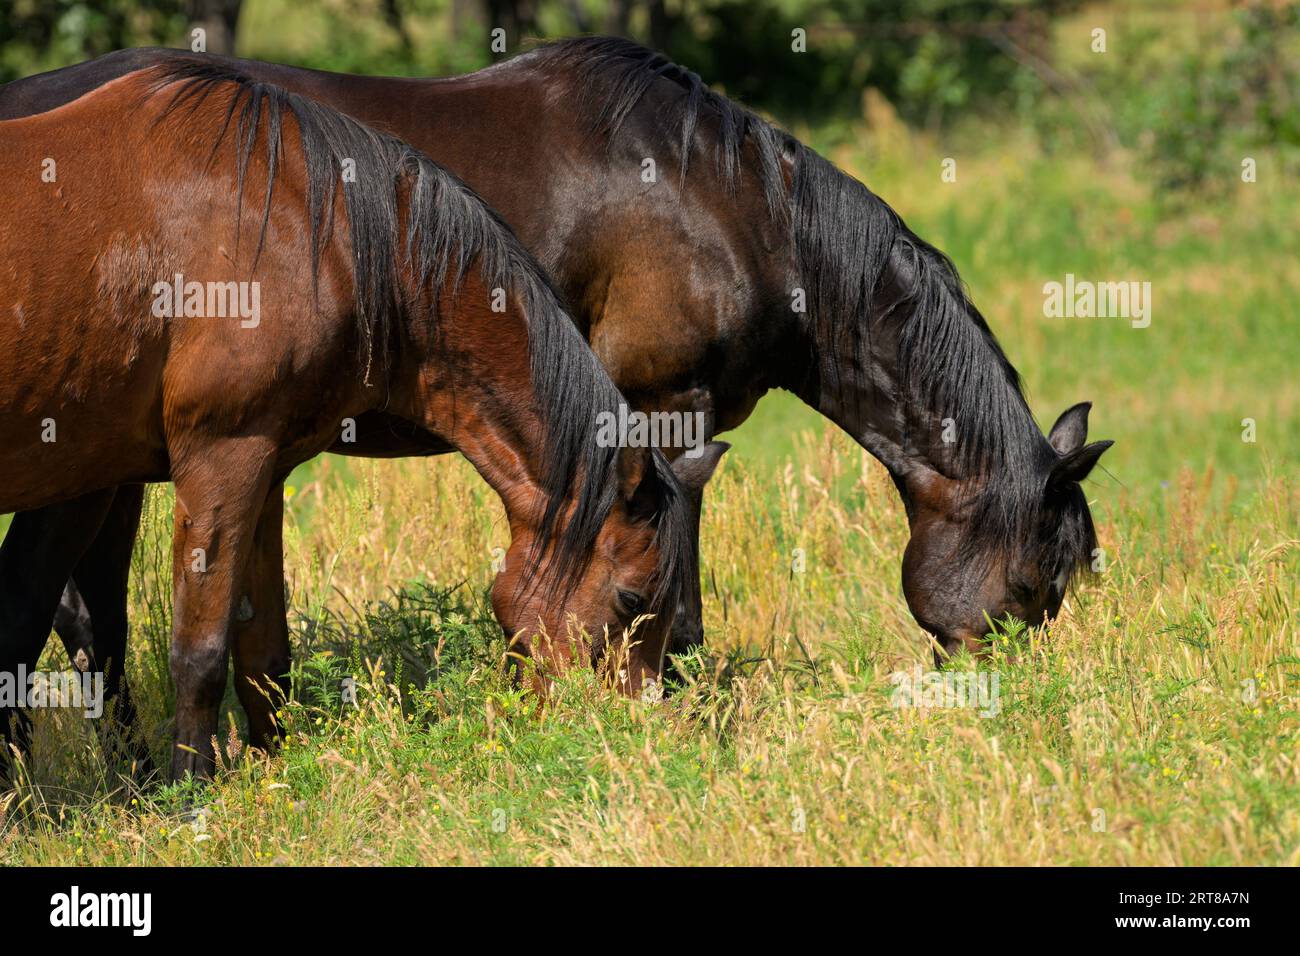 Une baie rouge et une baie sombre cheval arabe paissant dans l'herbe profonde des genoux au soleil de printemps Banque D'Images